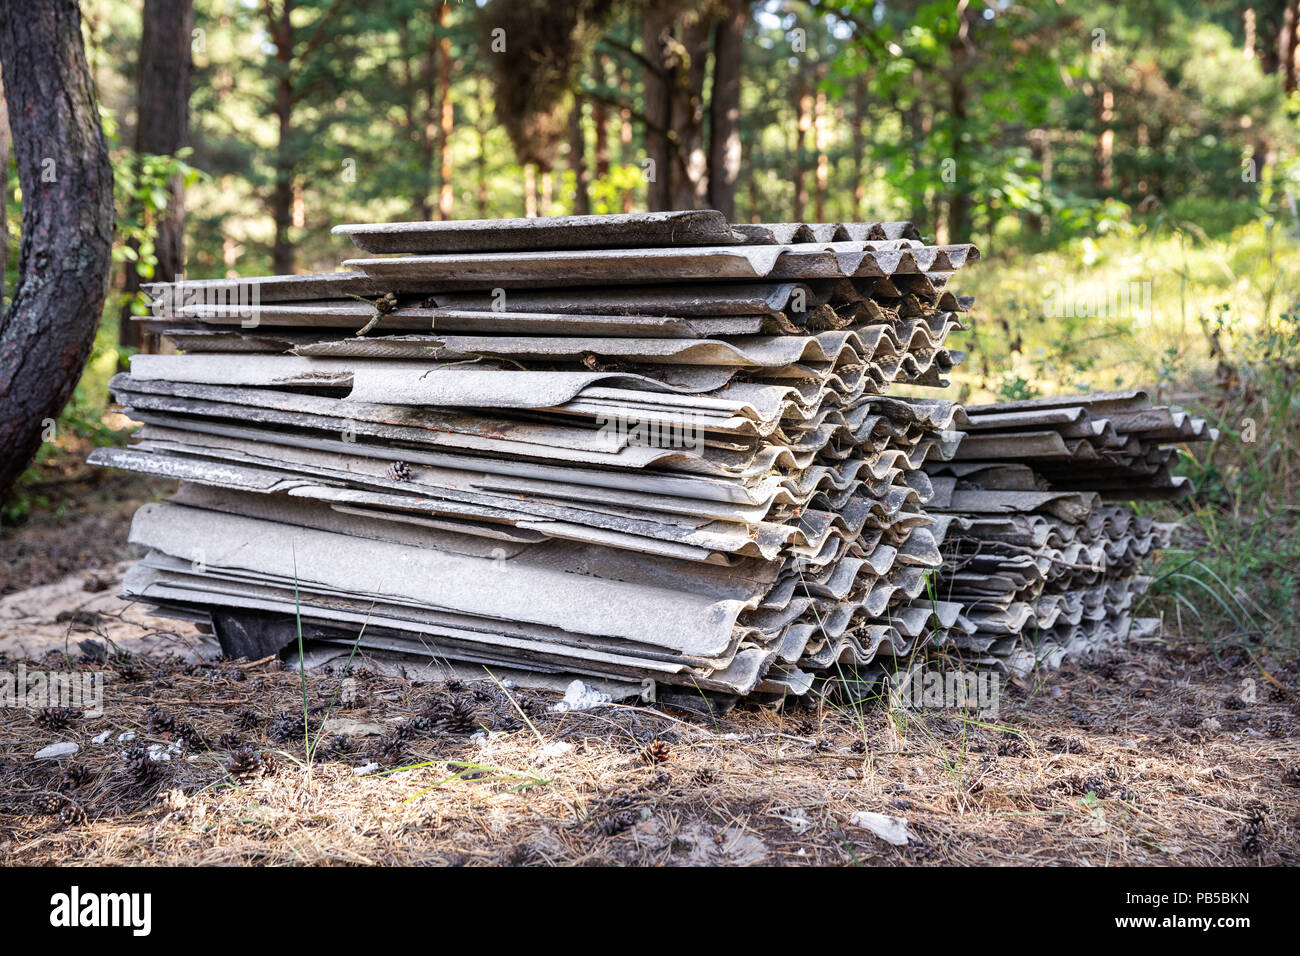 La pollution de l'environnement - de vieux draps ardoise amiante en forêt Banque D'Images